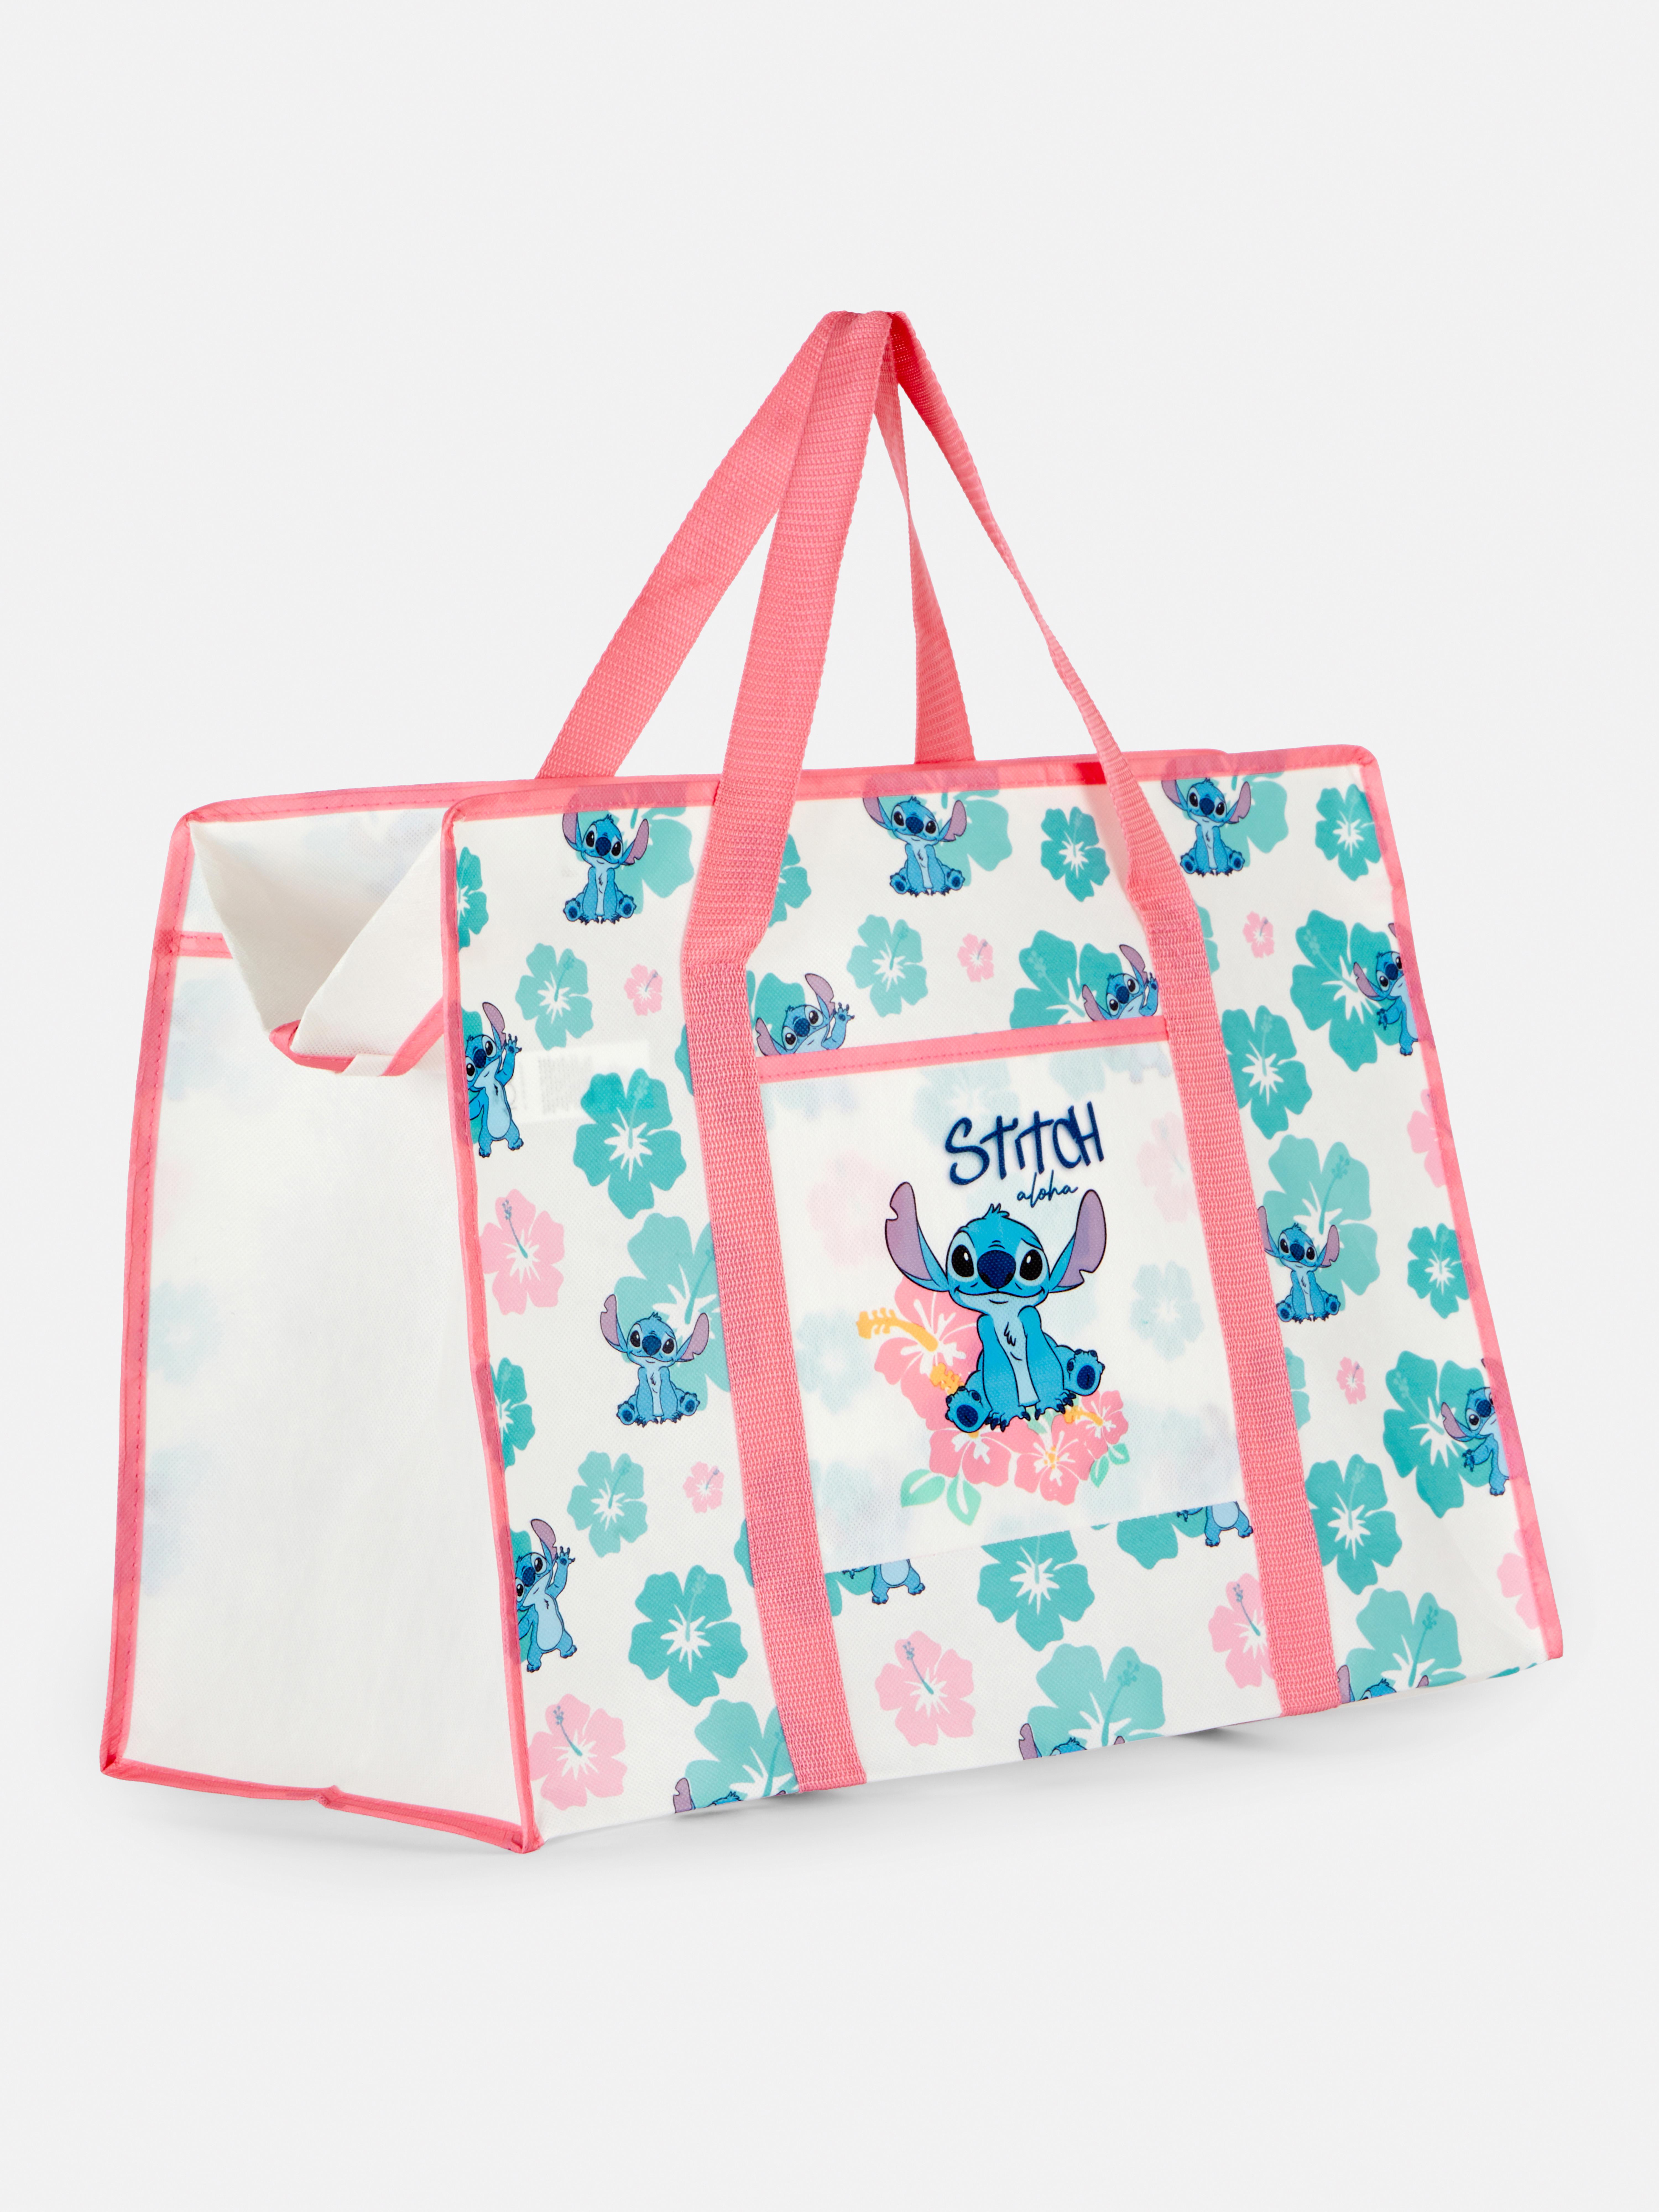 Disney’s Lilo & Stitch Tropical Print Storage Bag